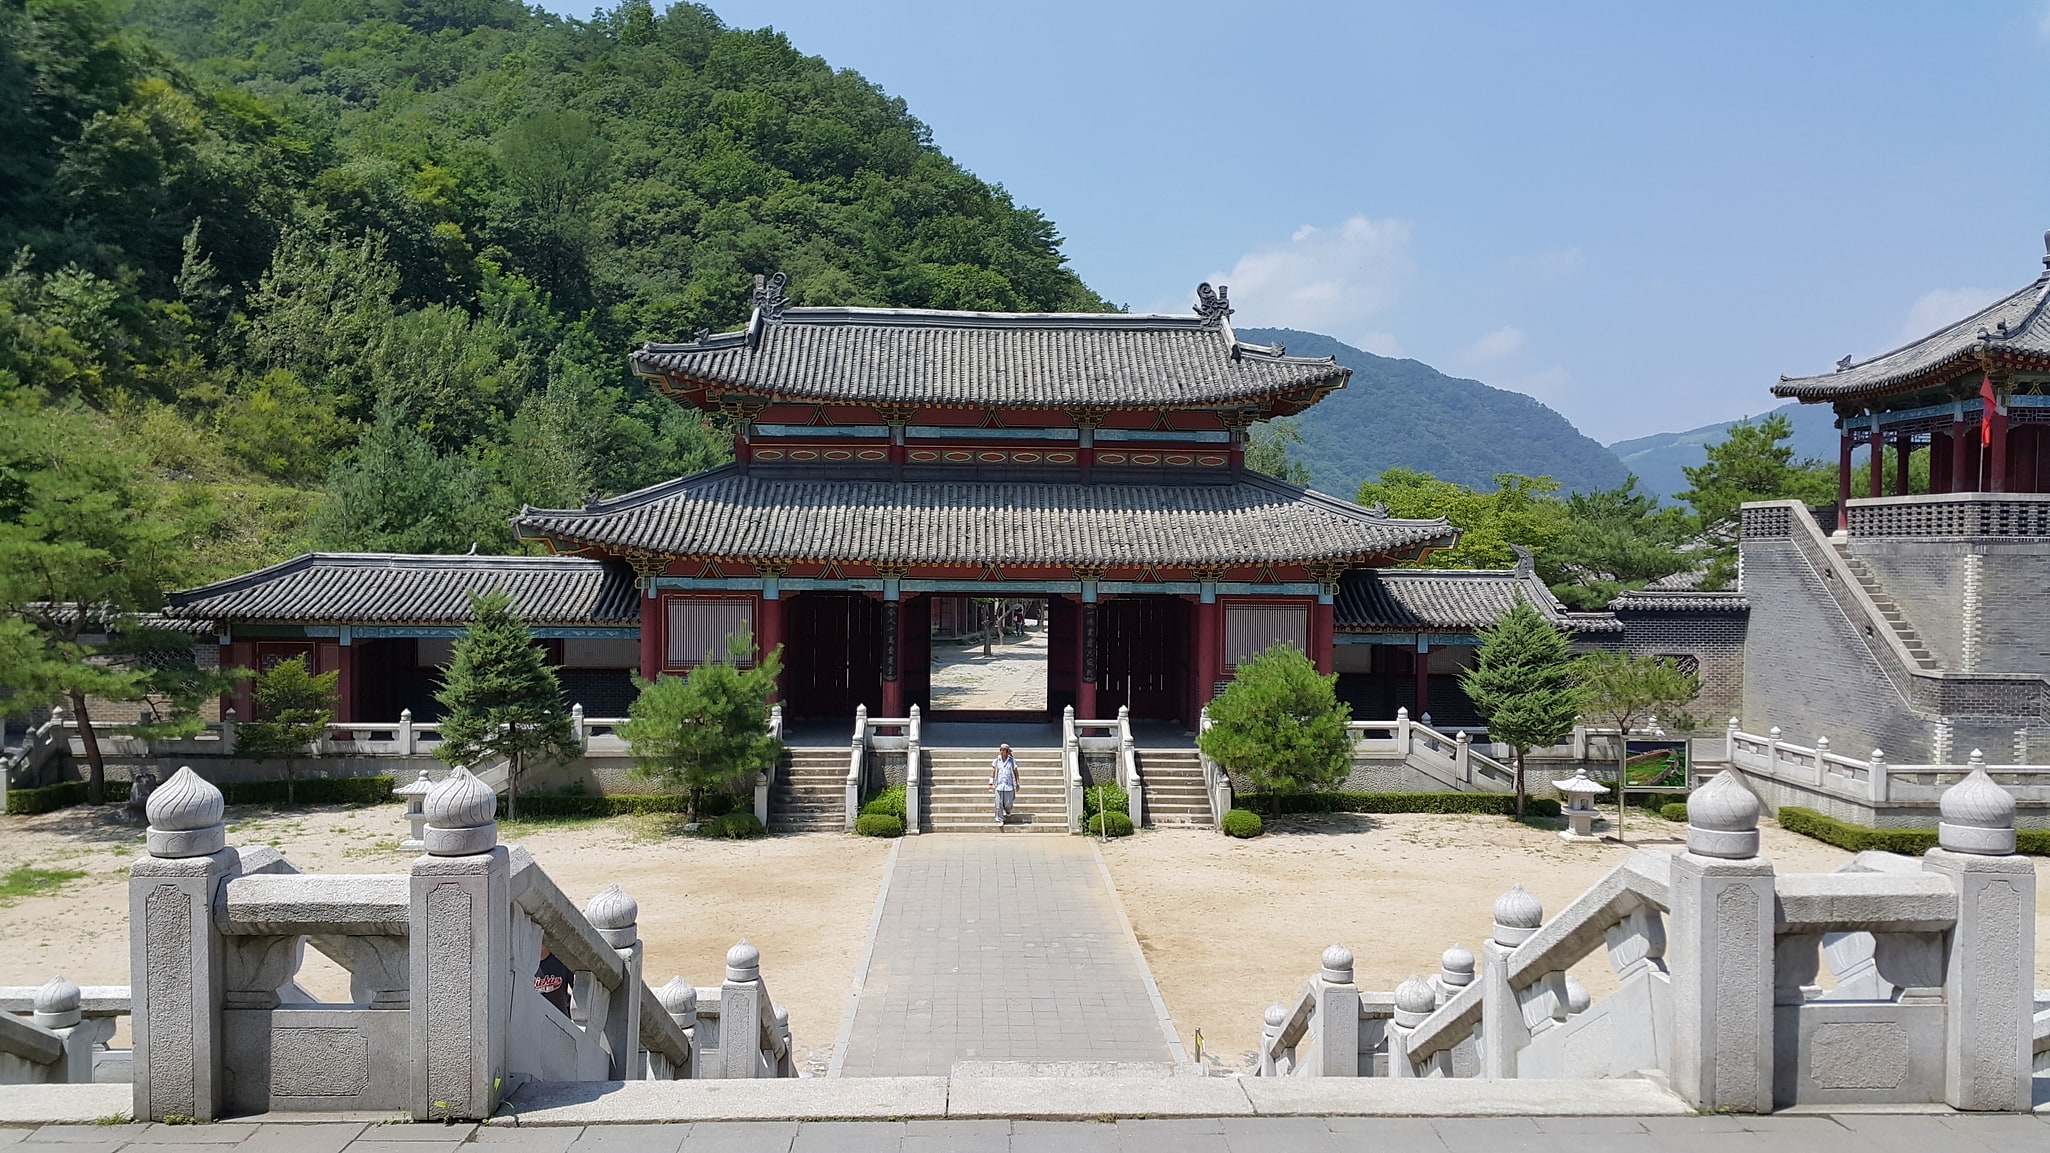 Danyang, South Korea